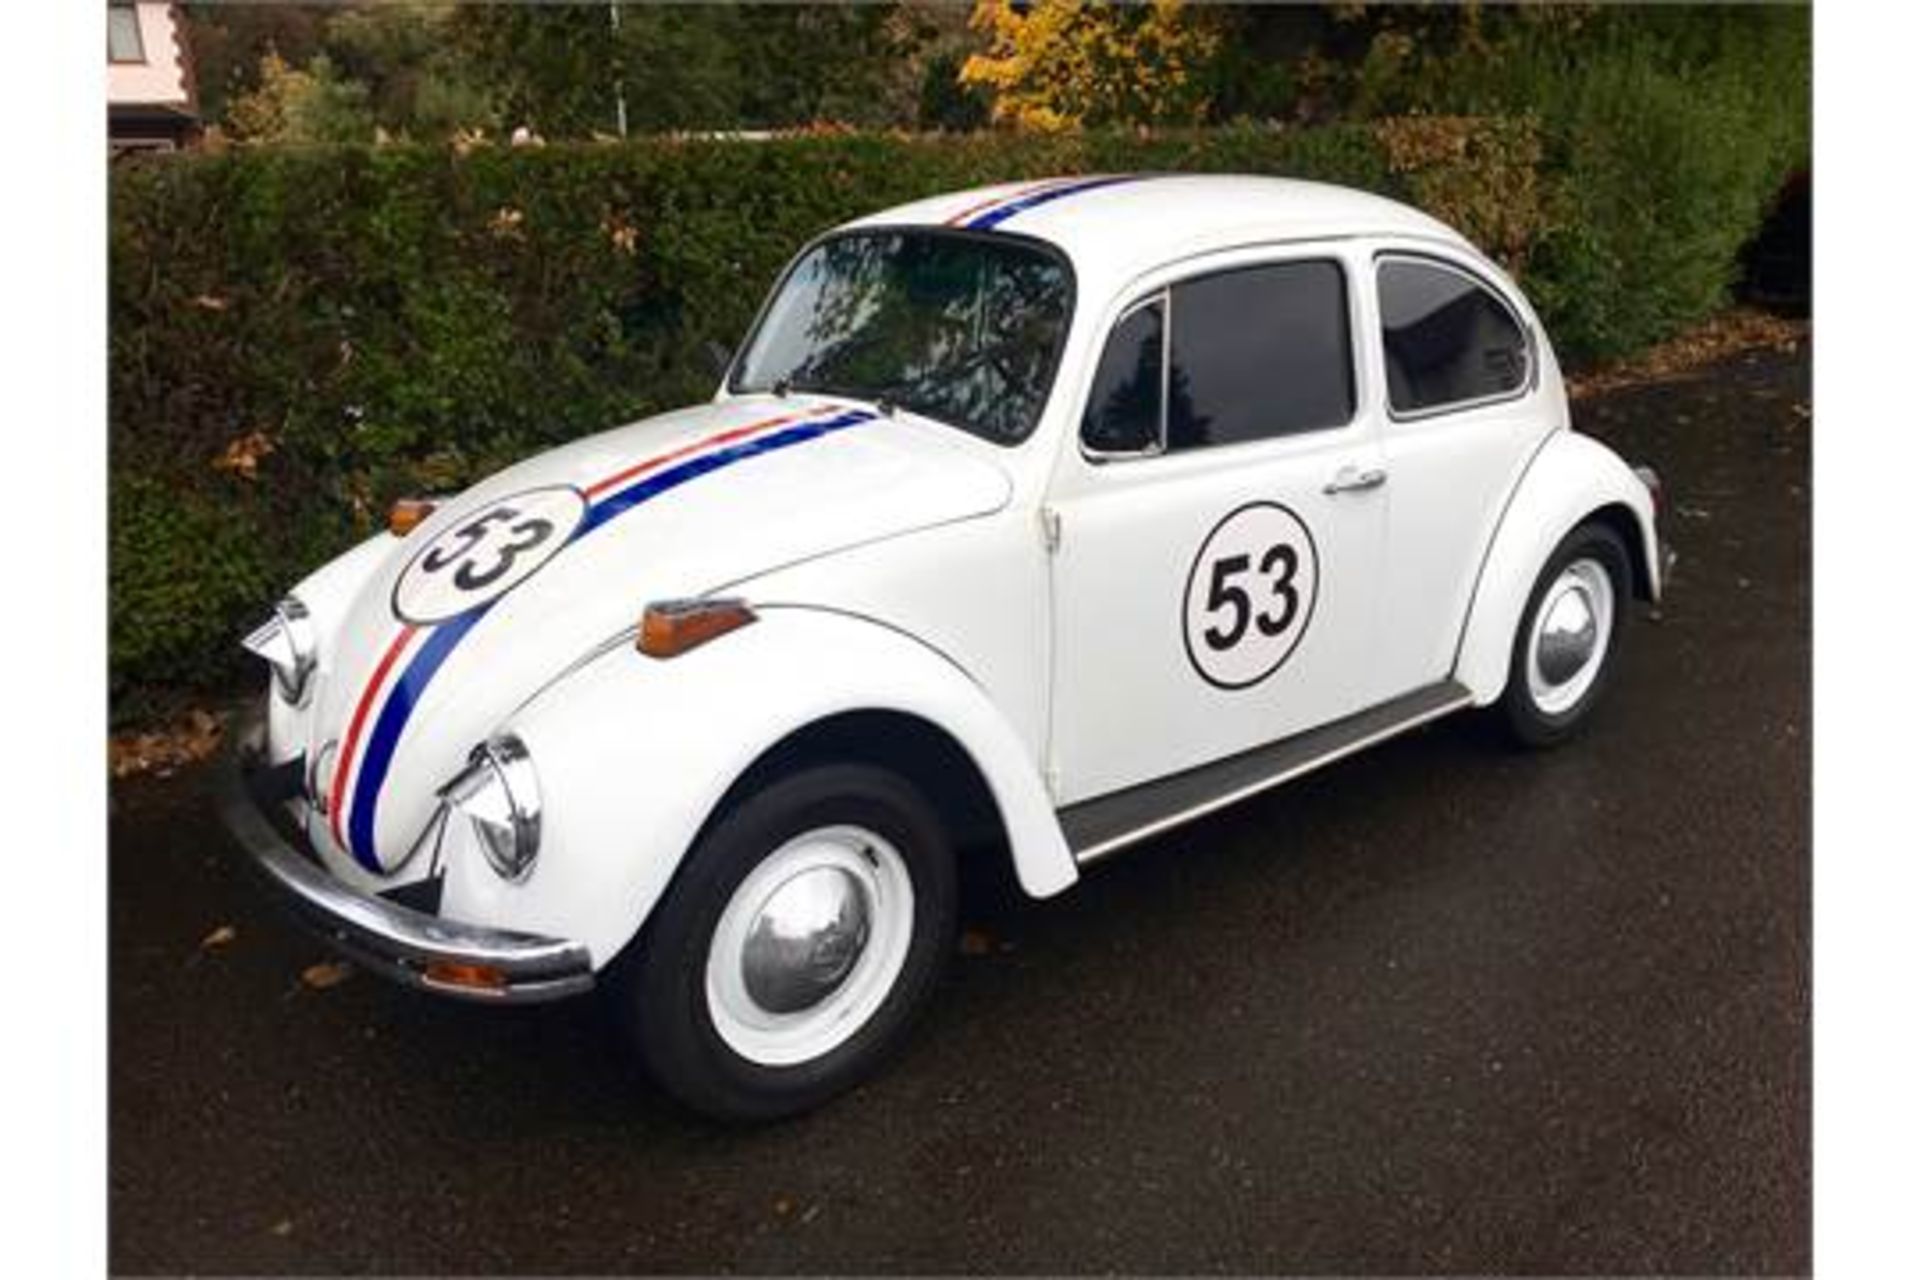 1974 VW Beetle - Herbie - Image 4 of 9